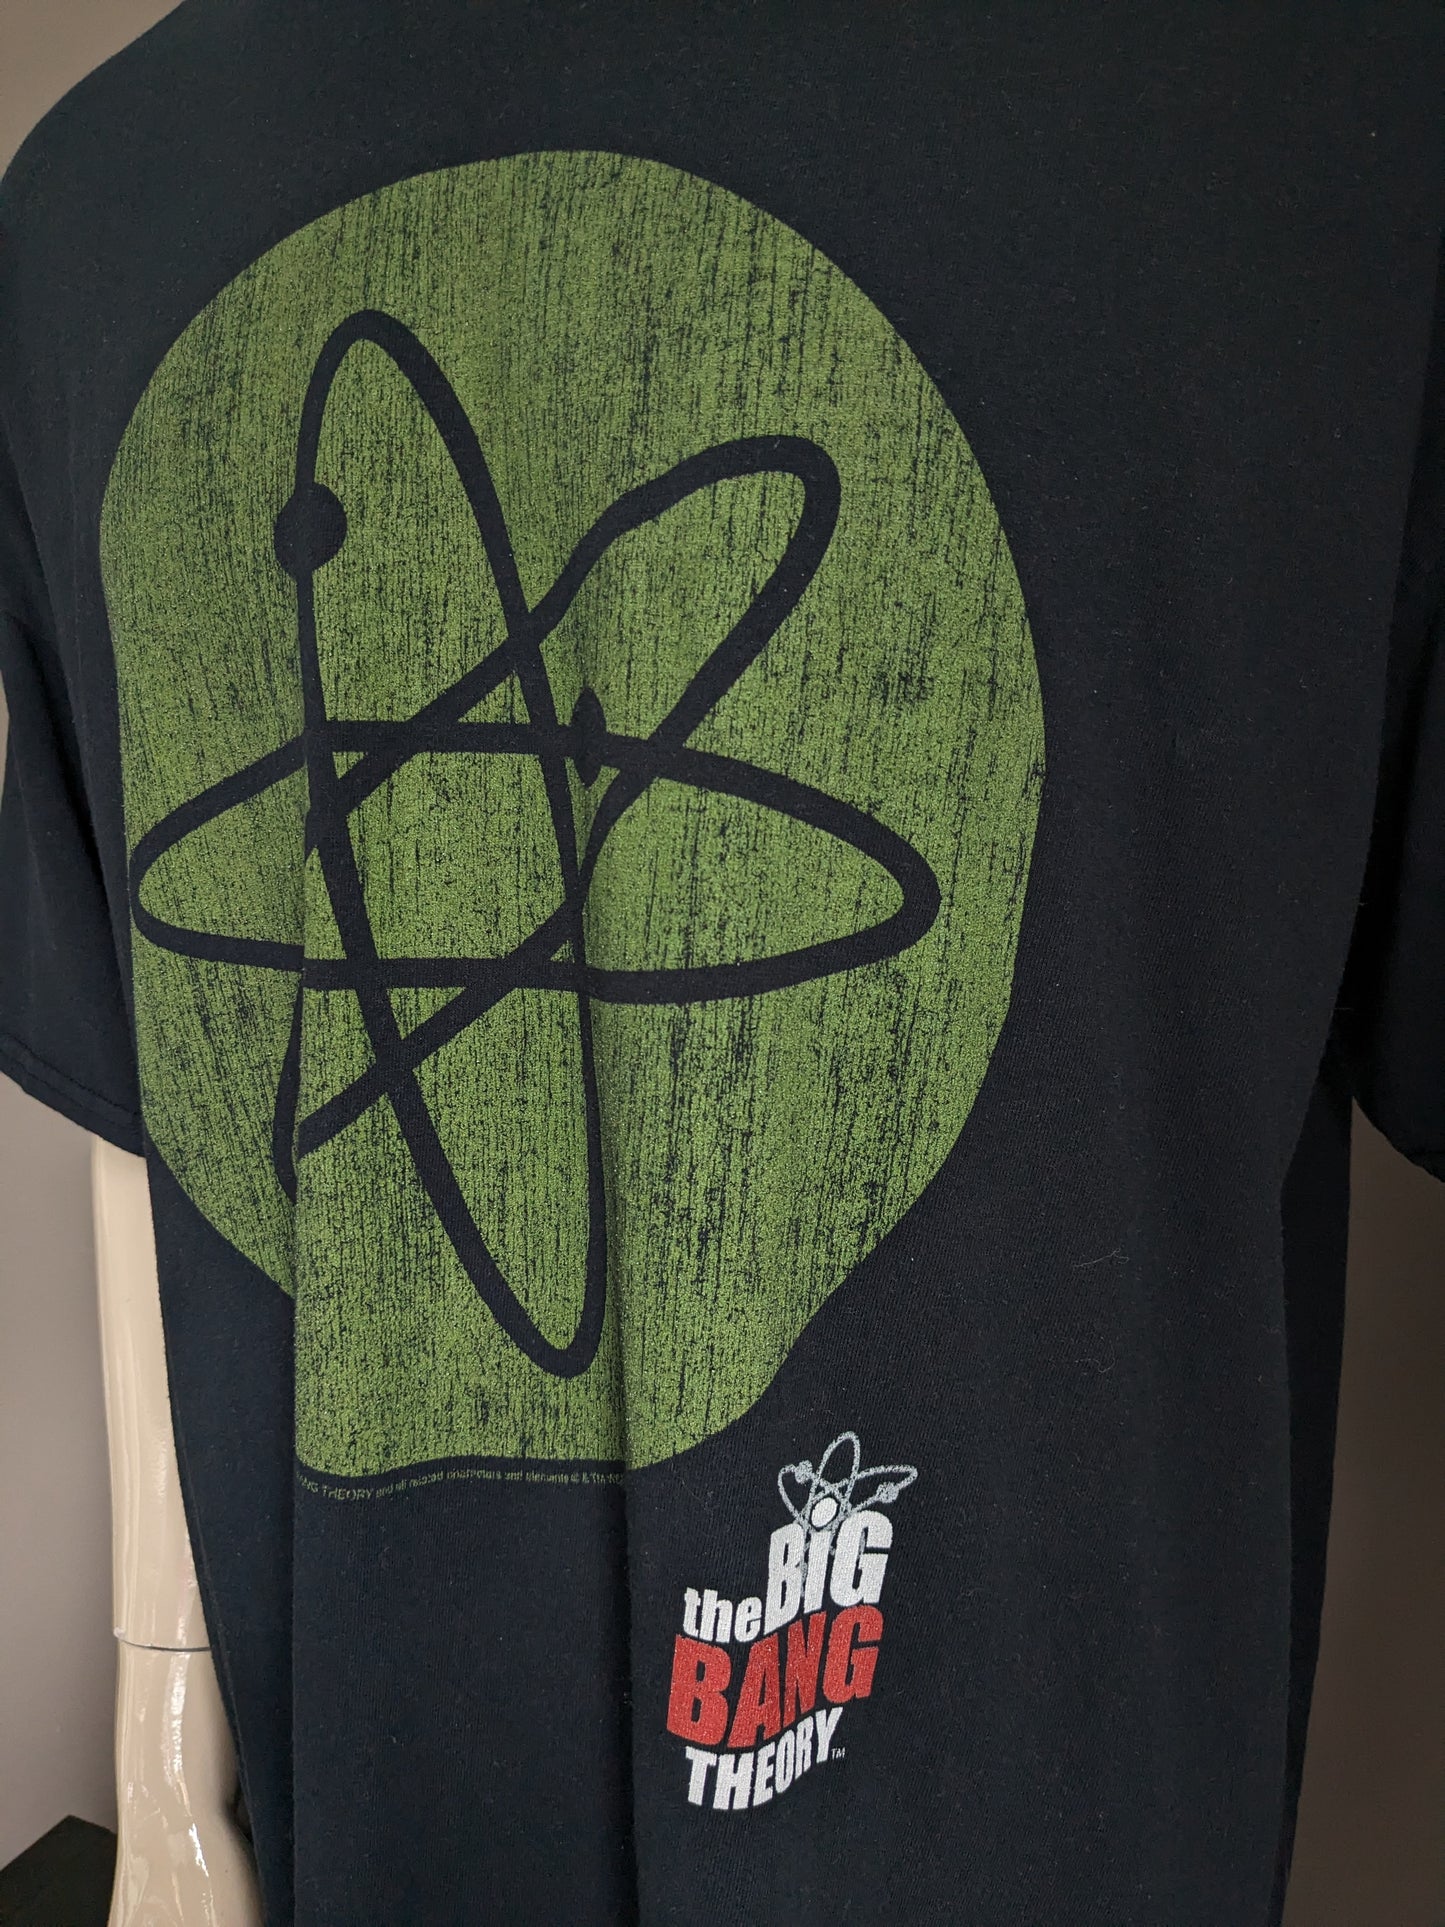 Absolute Cult "The Big Bang Theory" shirt. Zwart met opdruk. Maat 3XL / XXXL.